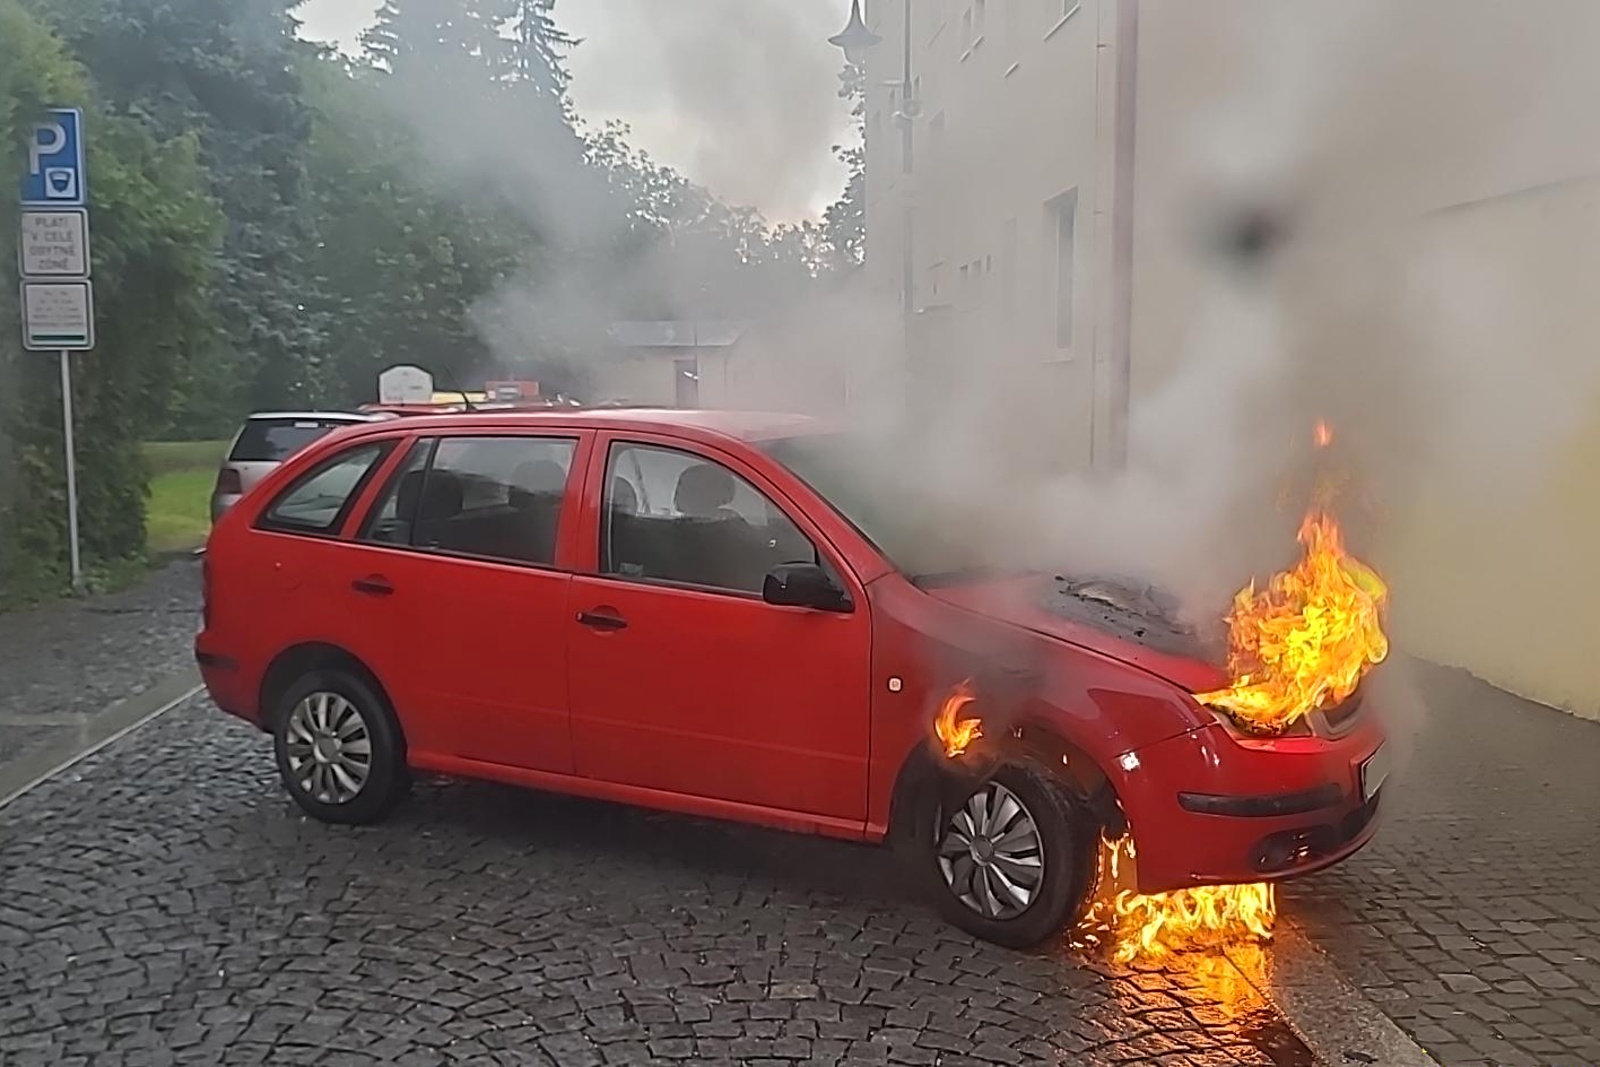 240524-Požár osobního automobilu po technické závadě v historickém centru Nymburka.jpg